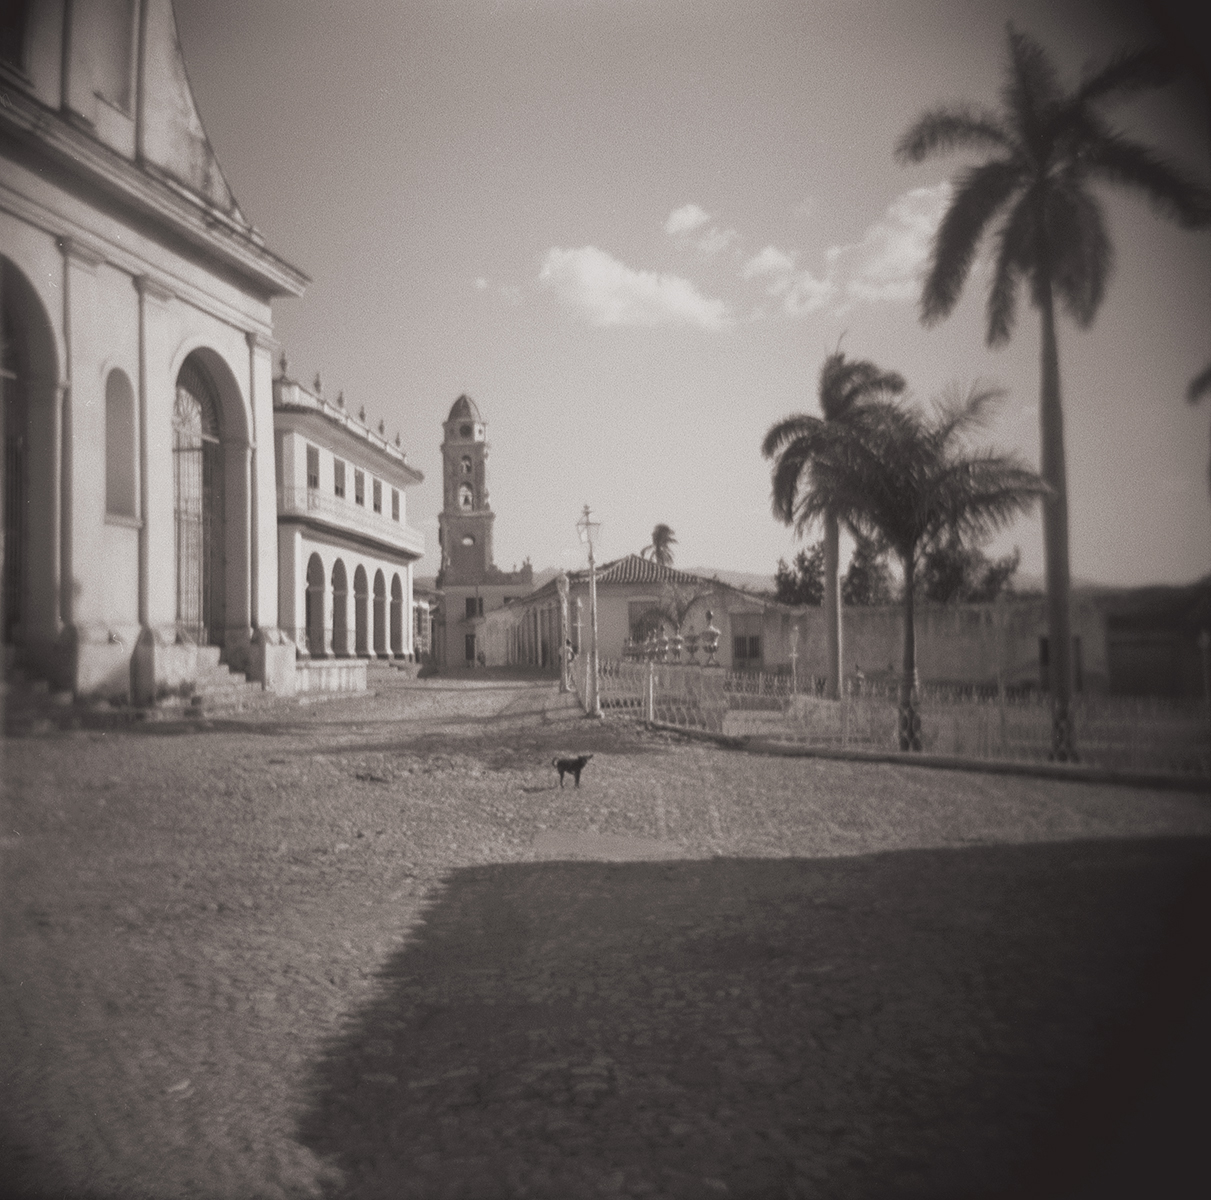  Trinidad, Cuba 